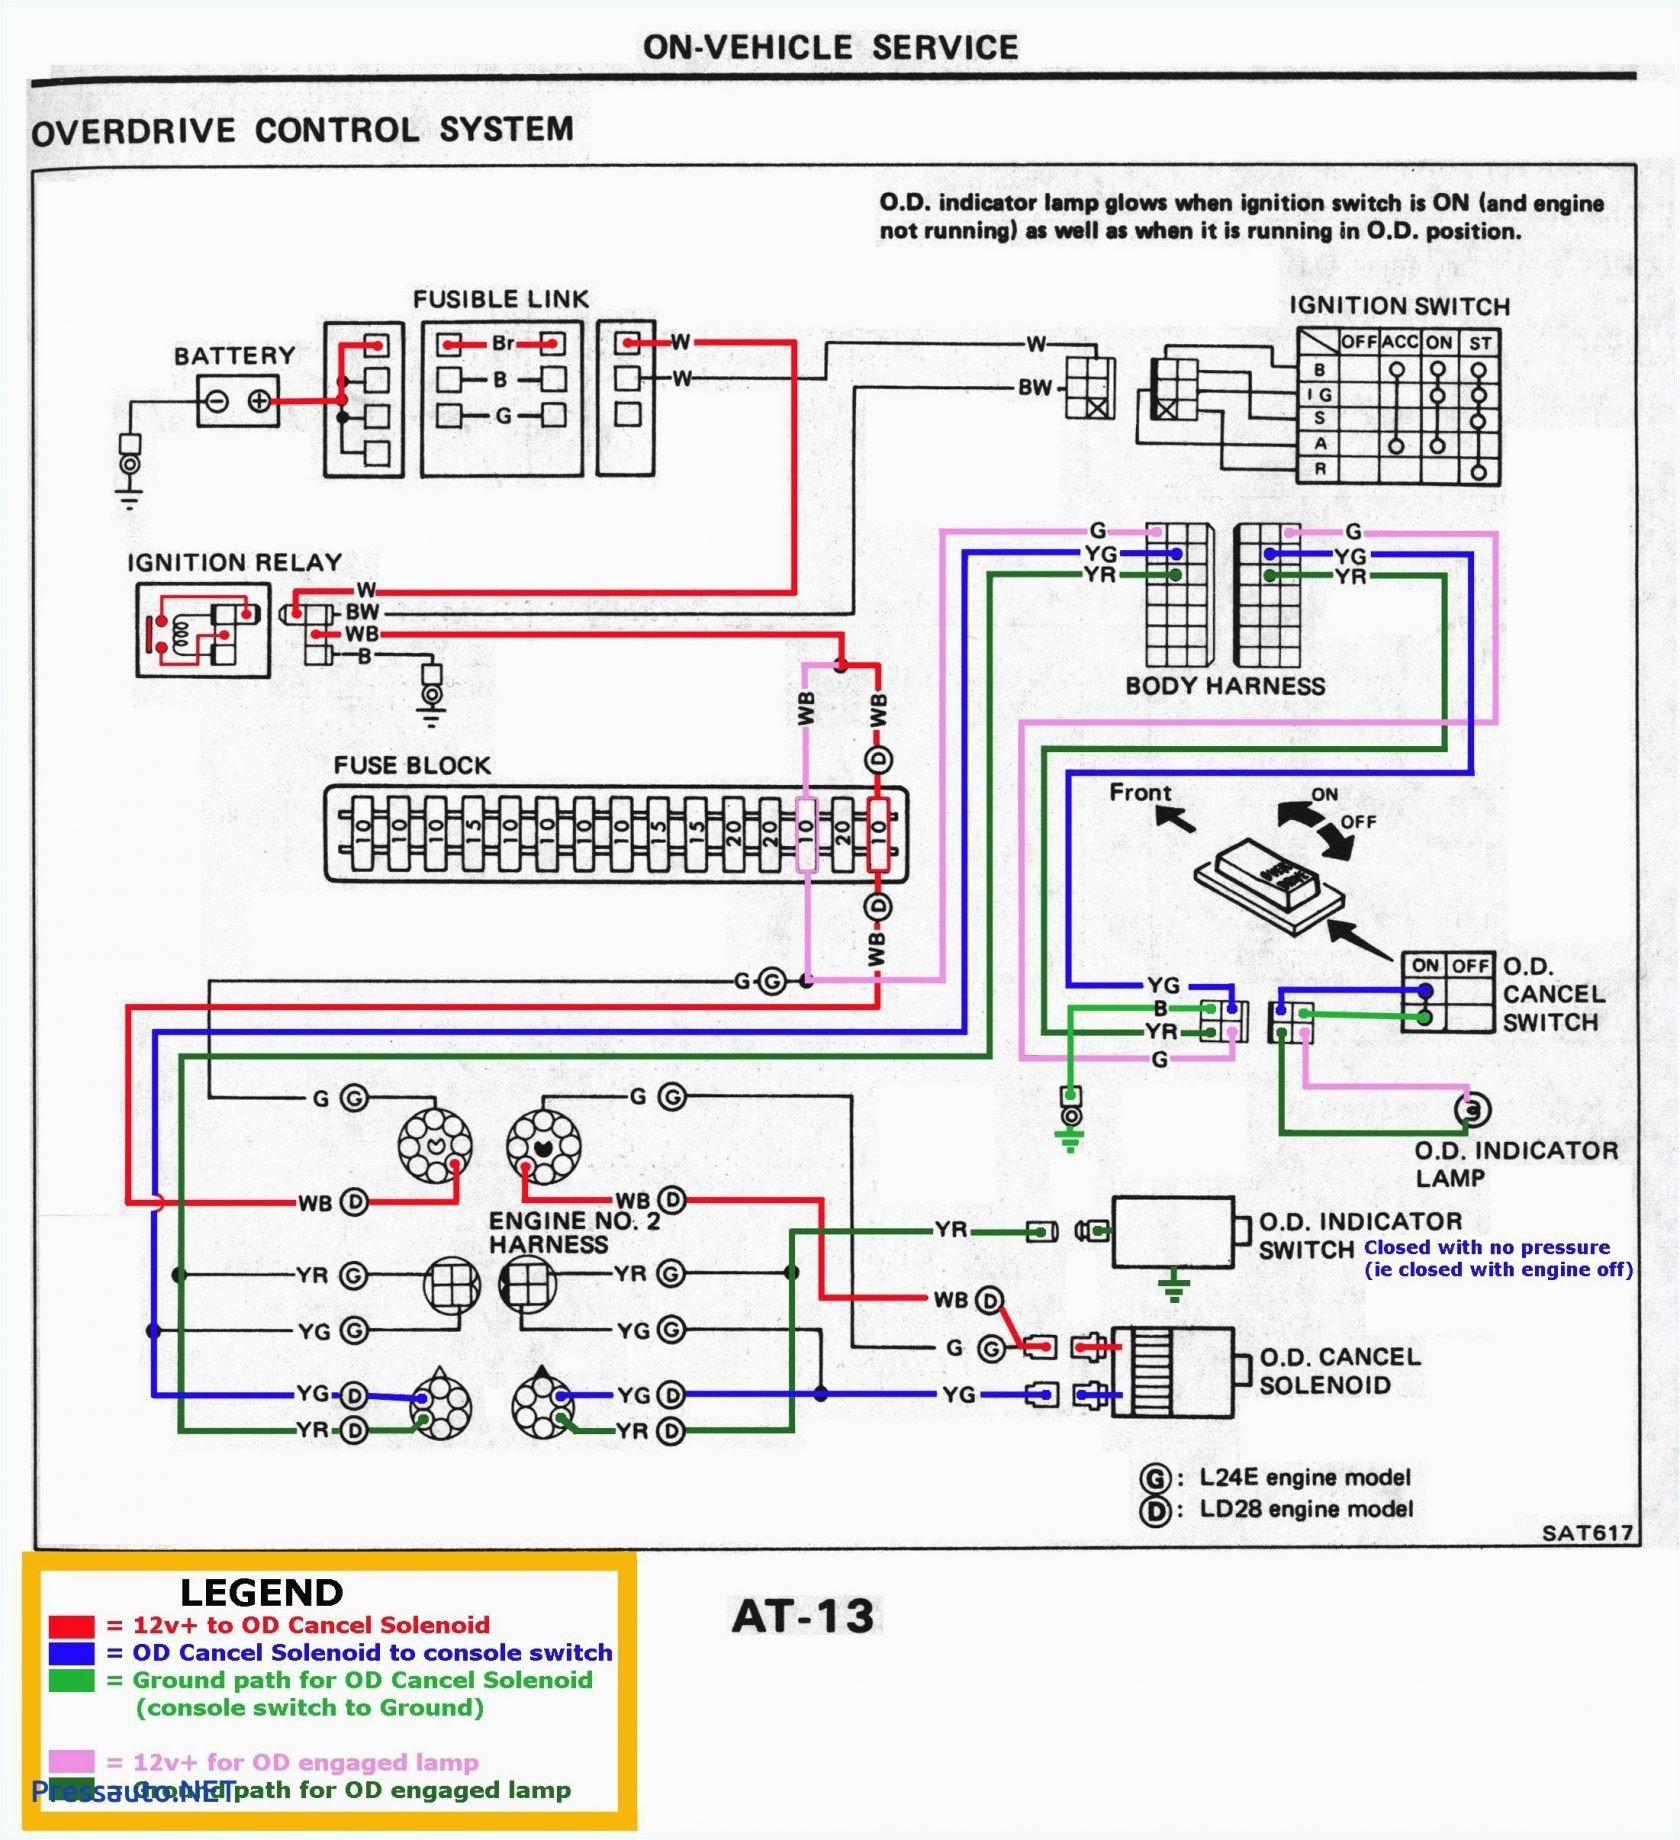 Car Amp Wiring Diagram Bose Car Amplifier Wiring Diagram Wiring Diagram Sample